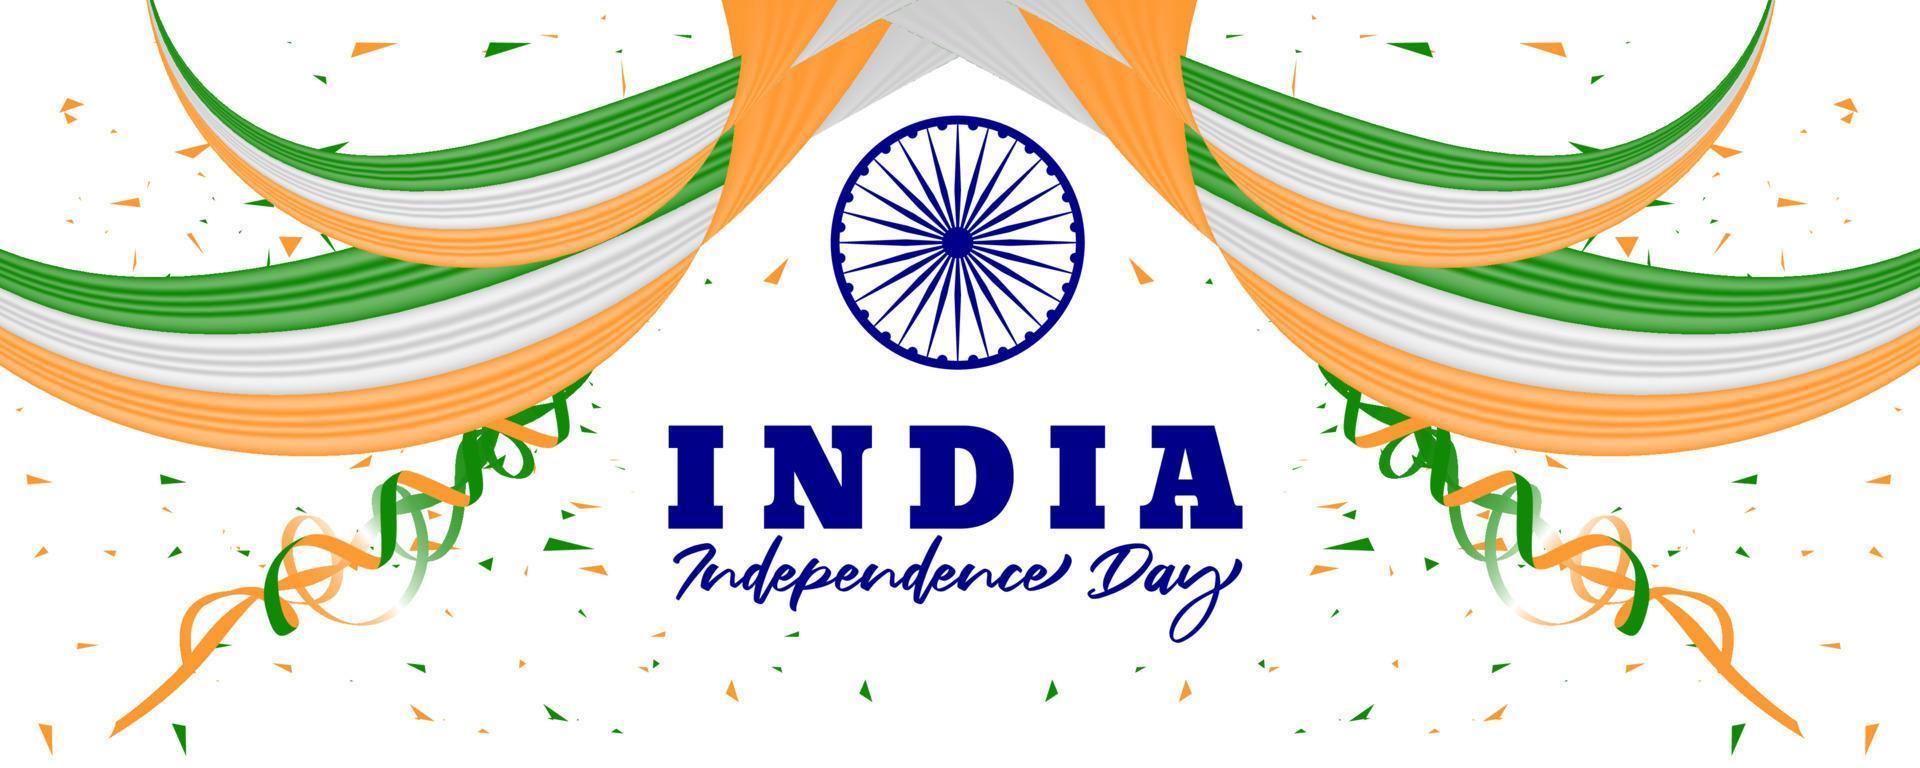 realistisches hintergrunddesign des indischen unabhängigkeitstages am 15. august vektor